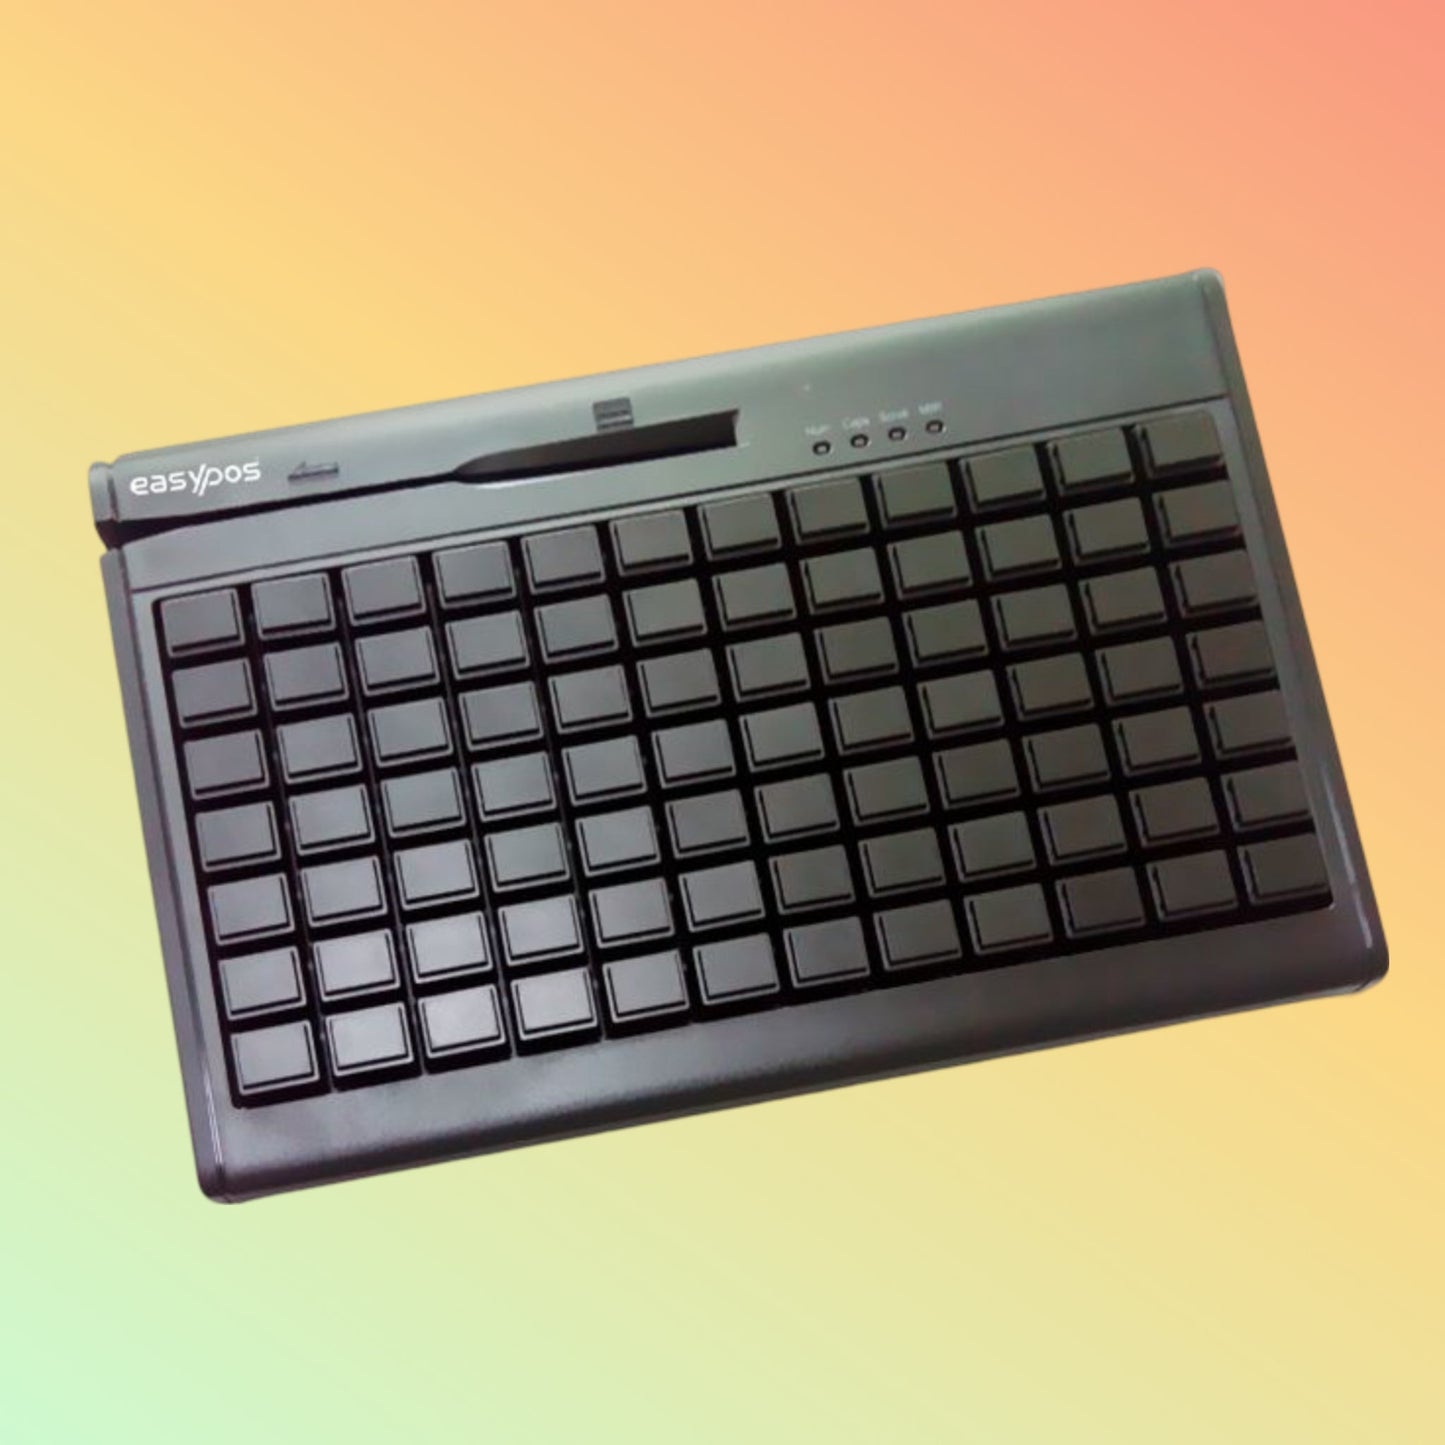 EasyPos 84 Keys USB Programmable Keyboard Black - EPKB84UM